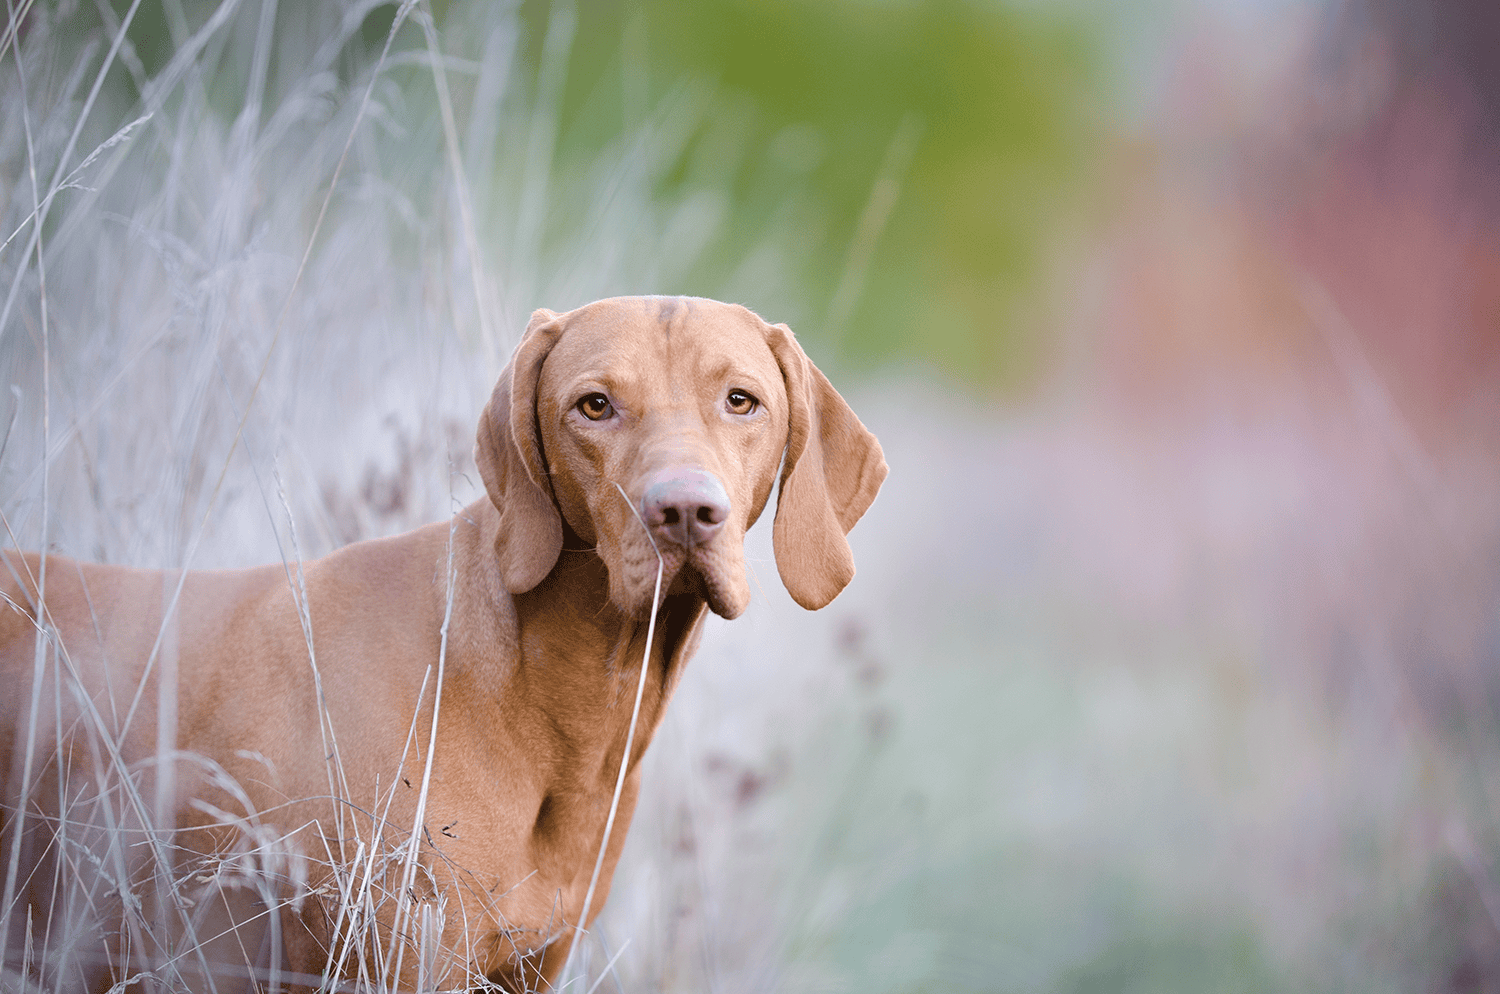 hound dog in a field